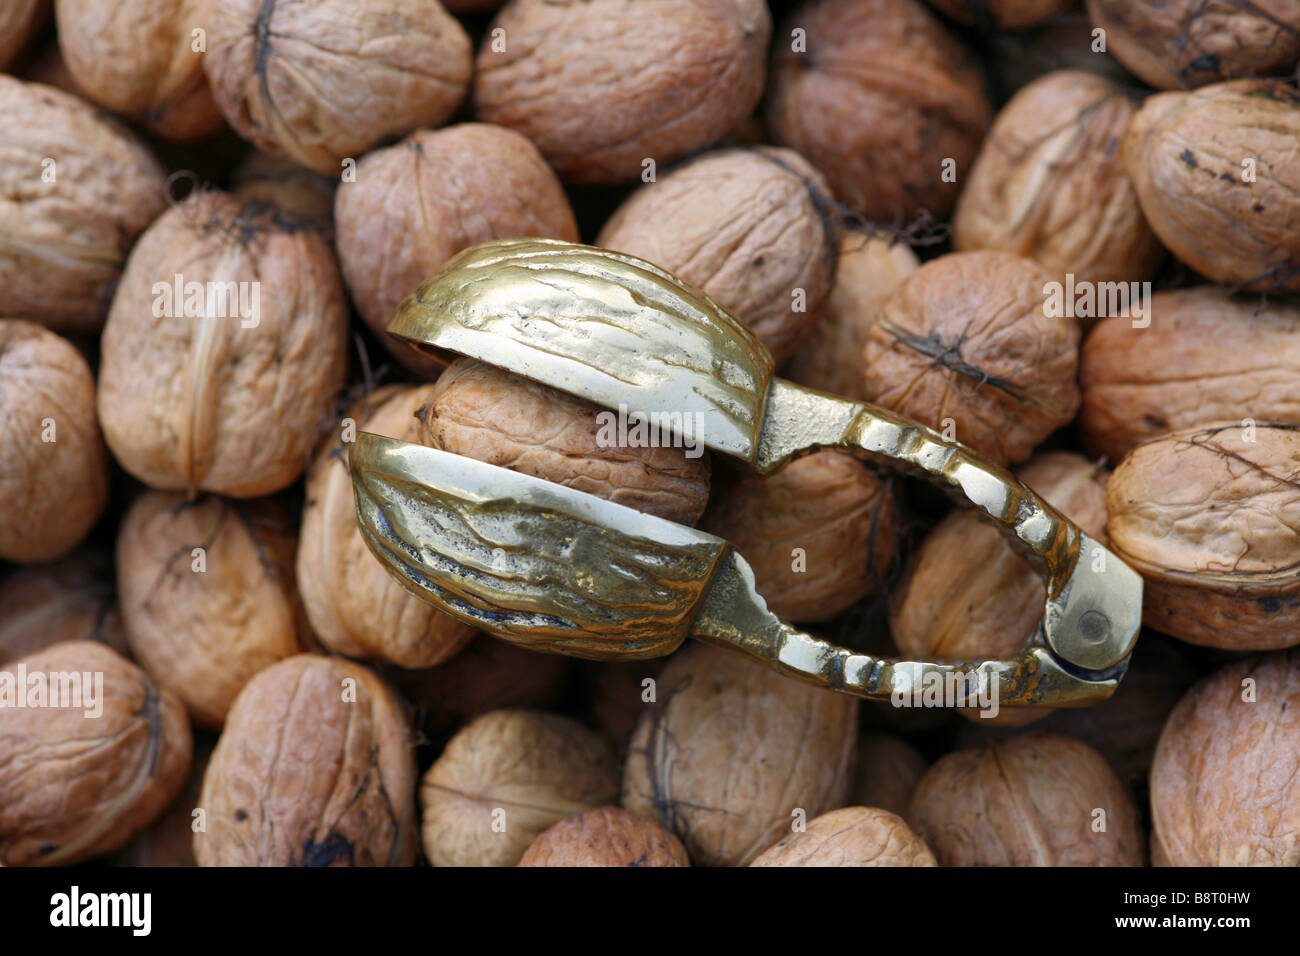 walnut (Juglans regia), walnuts with nutcracker Stock Photo